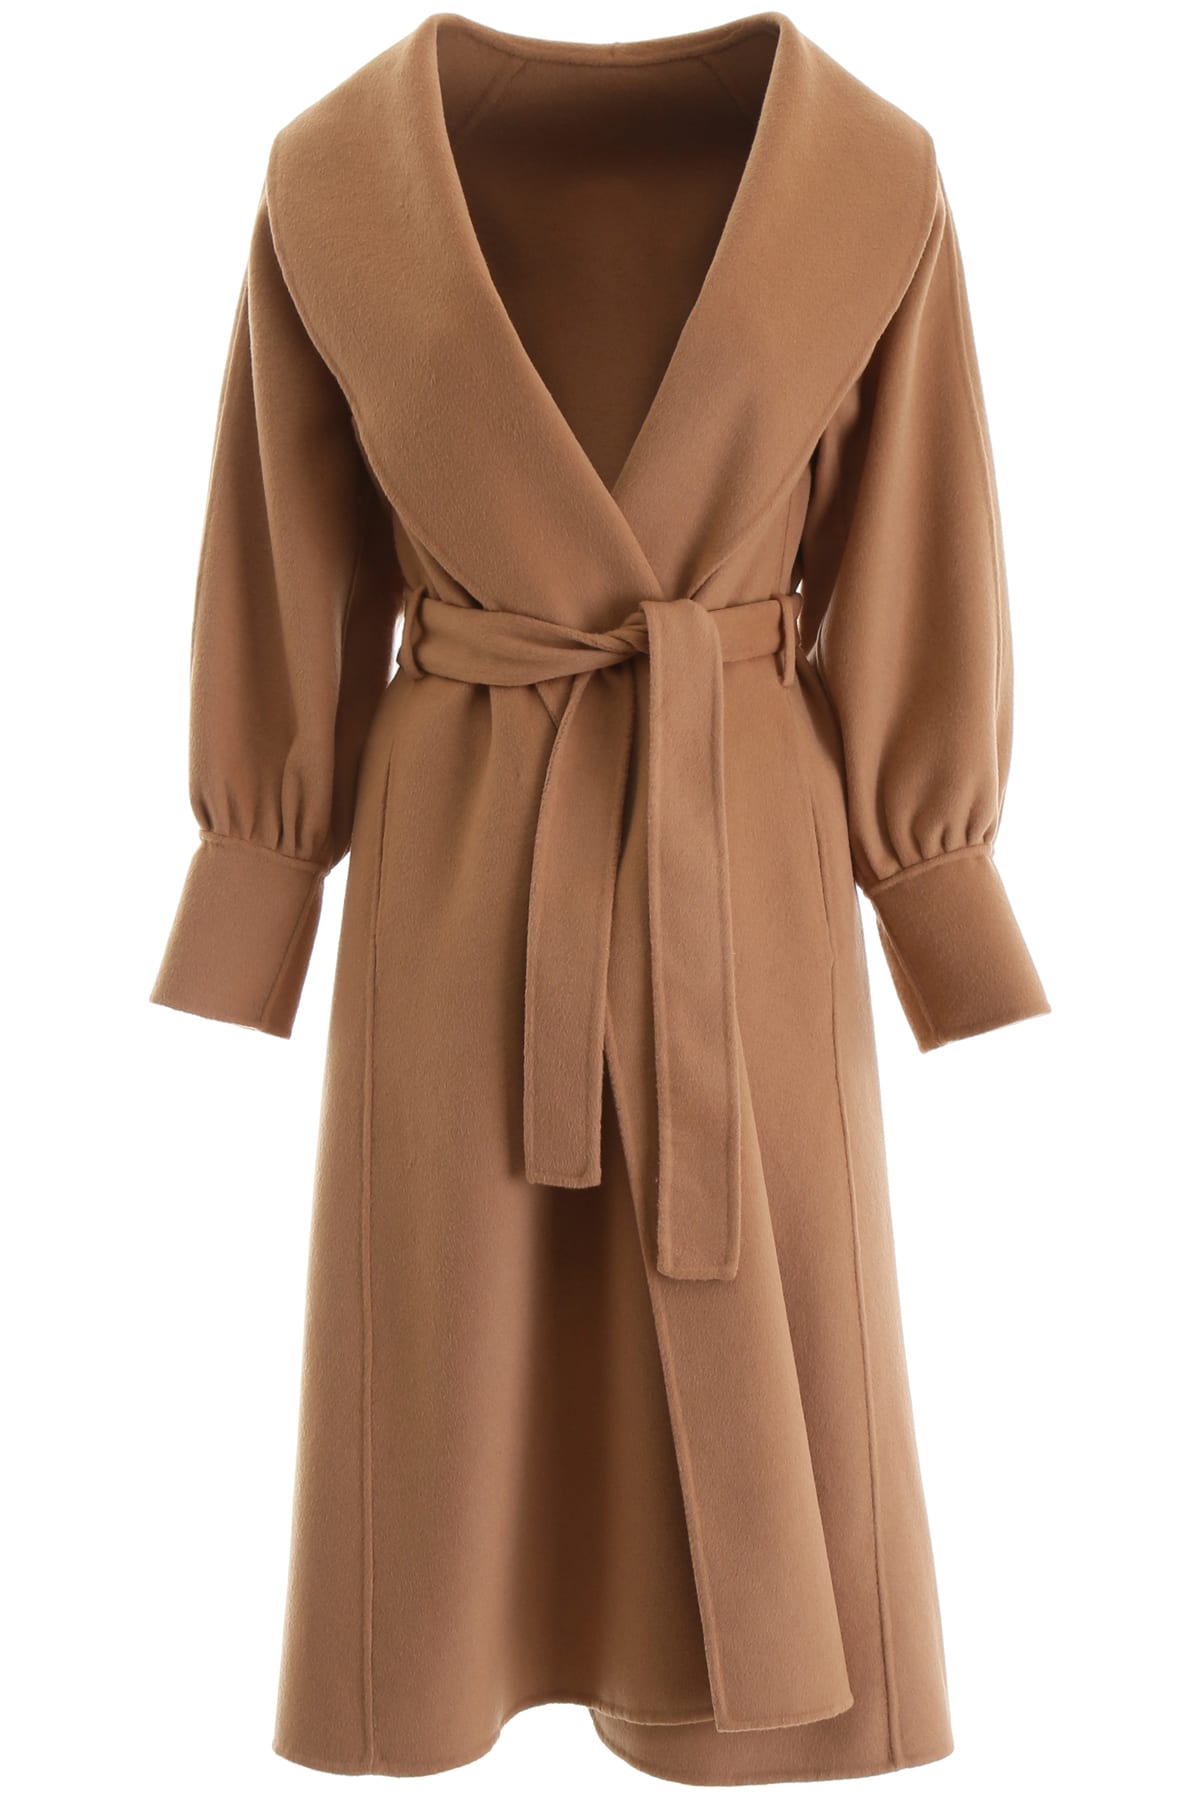 L'Autre Chose Belted Coat In Camel (Beige) | ModeSens